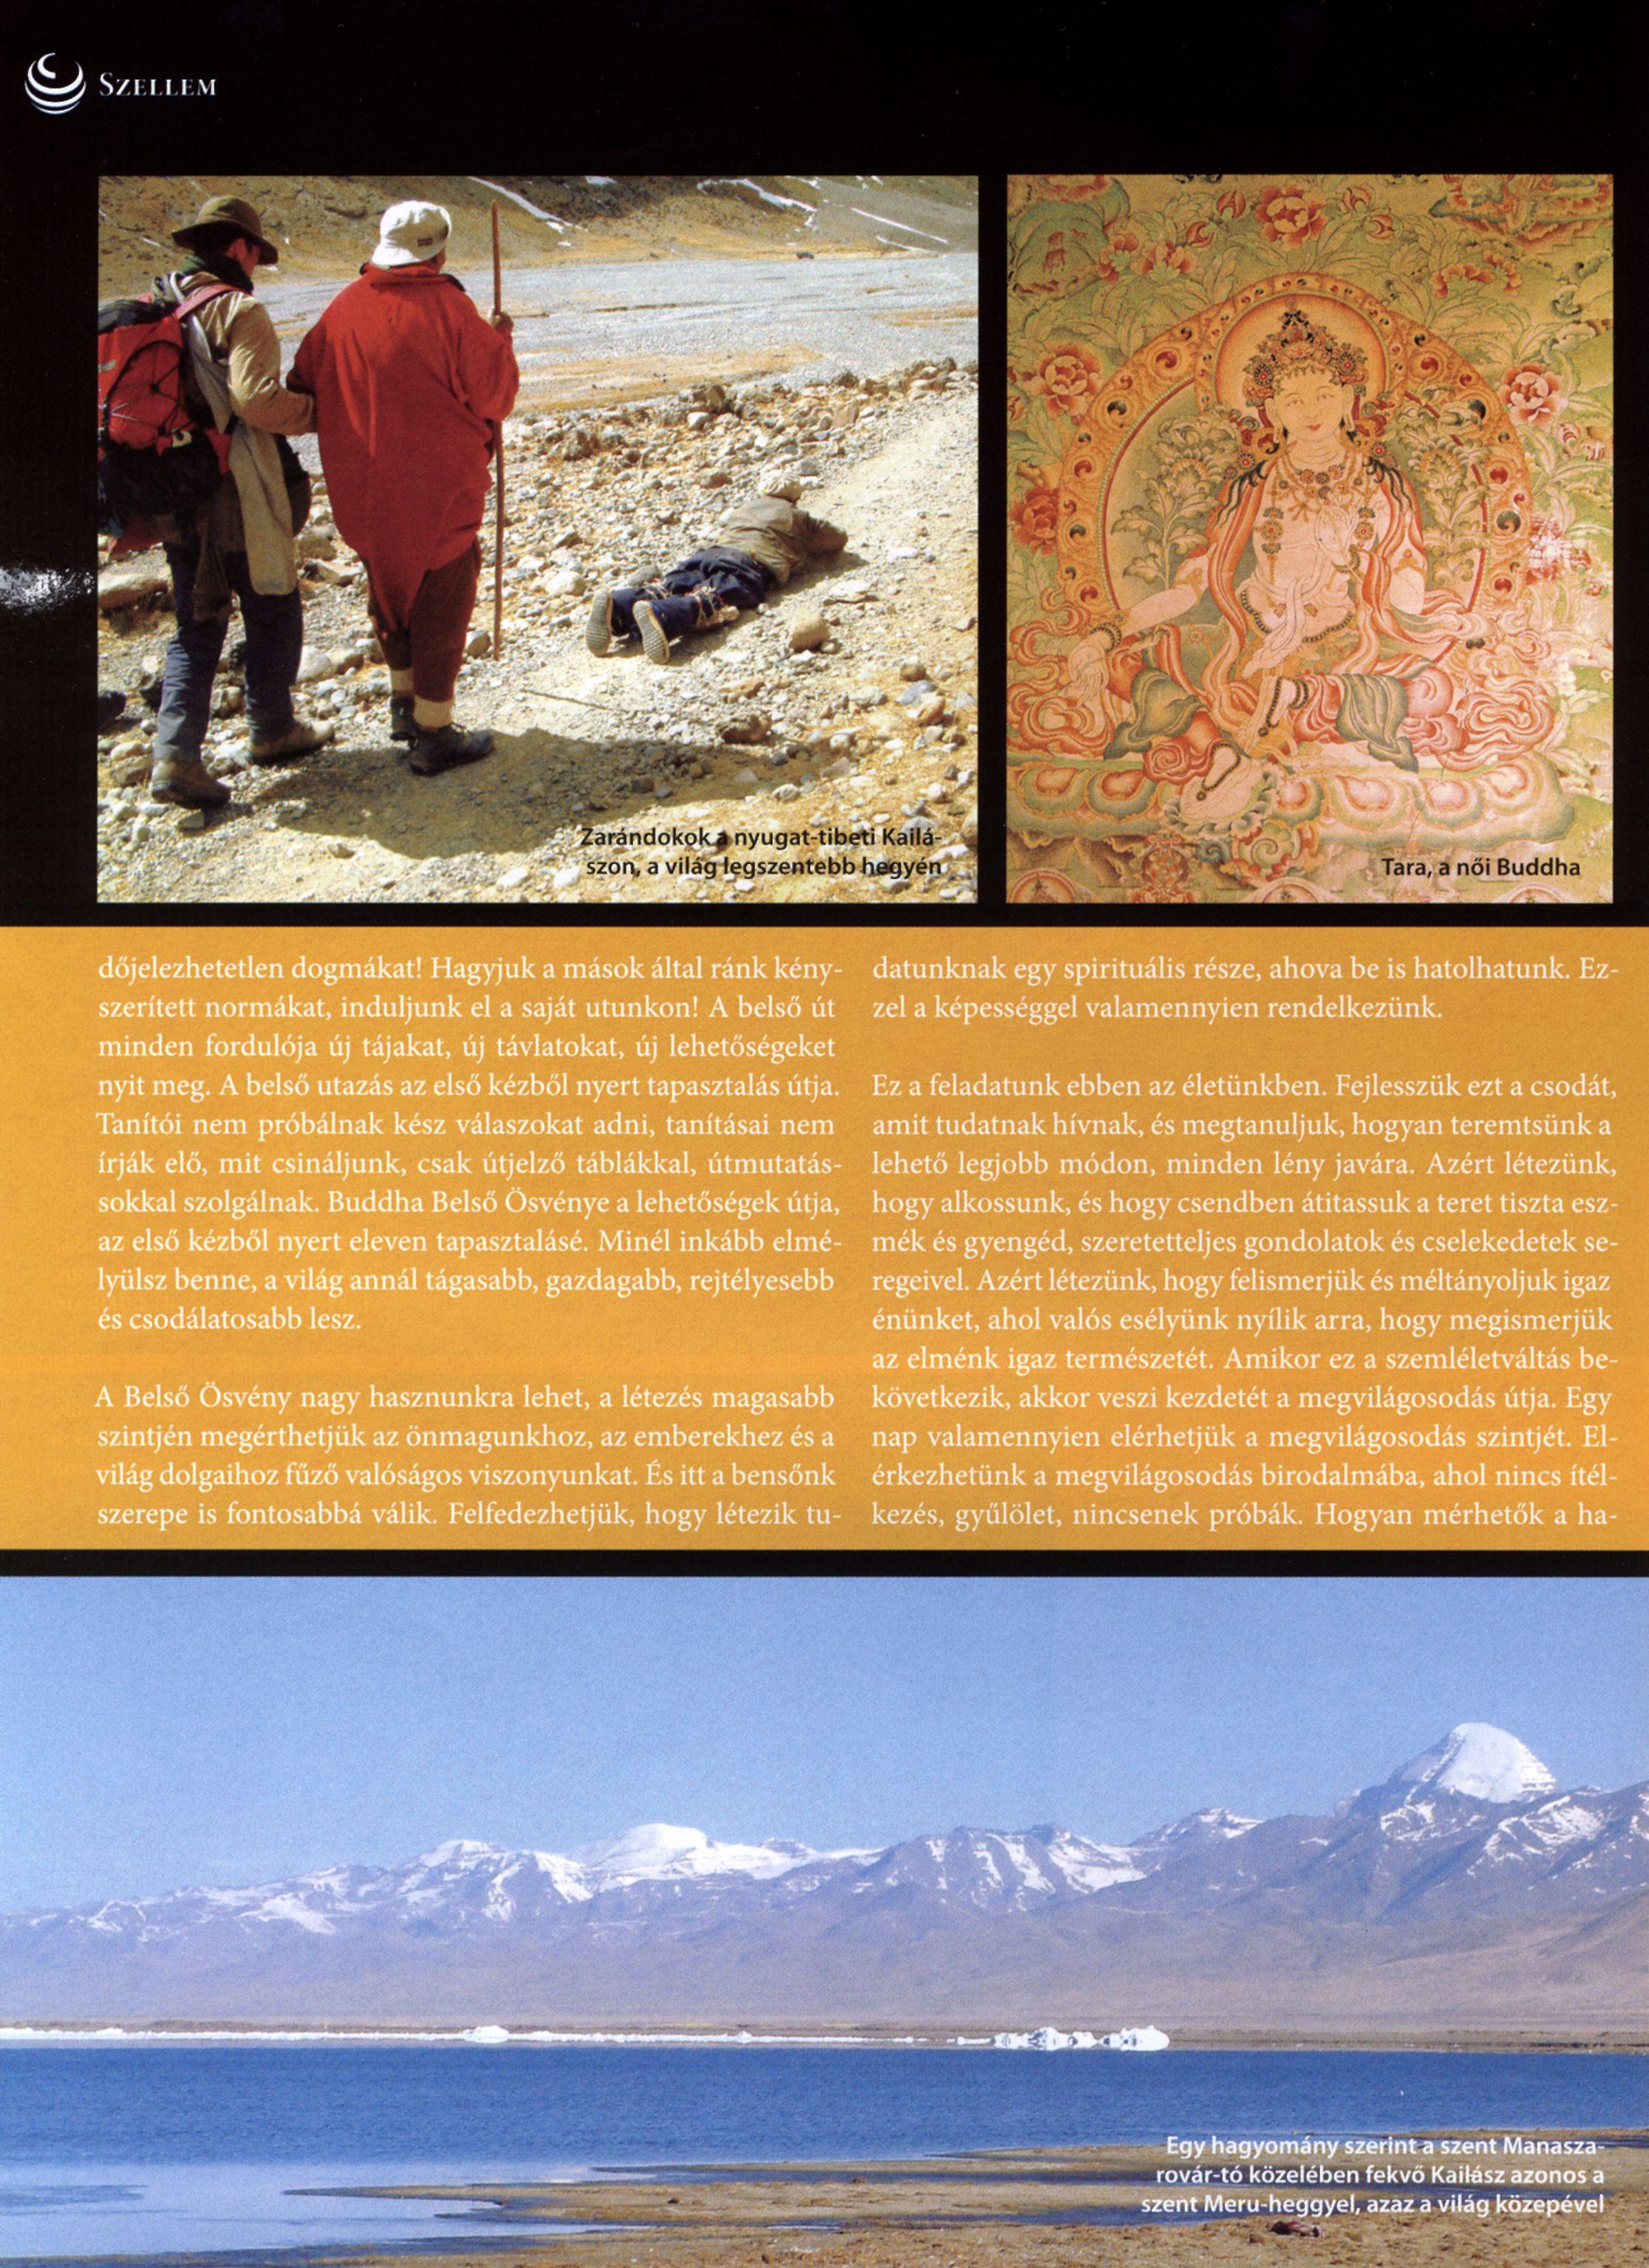 SZELLEM Zarándokok a nyugat-tibeti Kailászon, a világ legszentebb hegyén Tara, a női Buddha dőjelezhetetlen dogmákat!